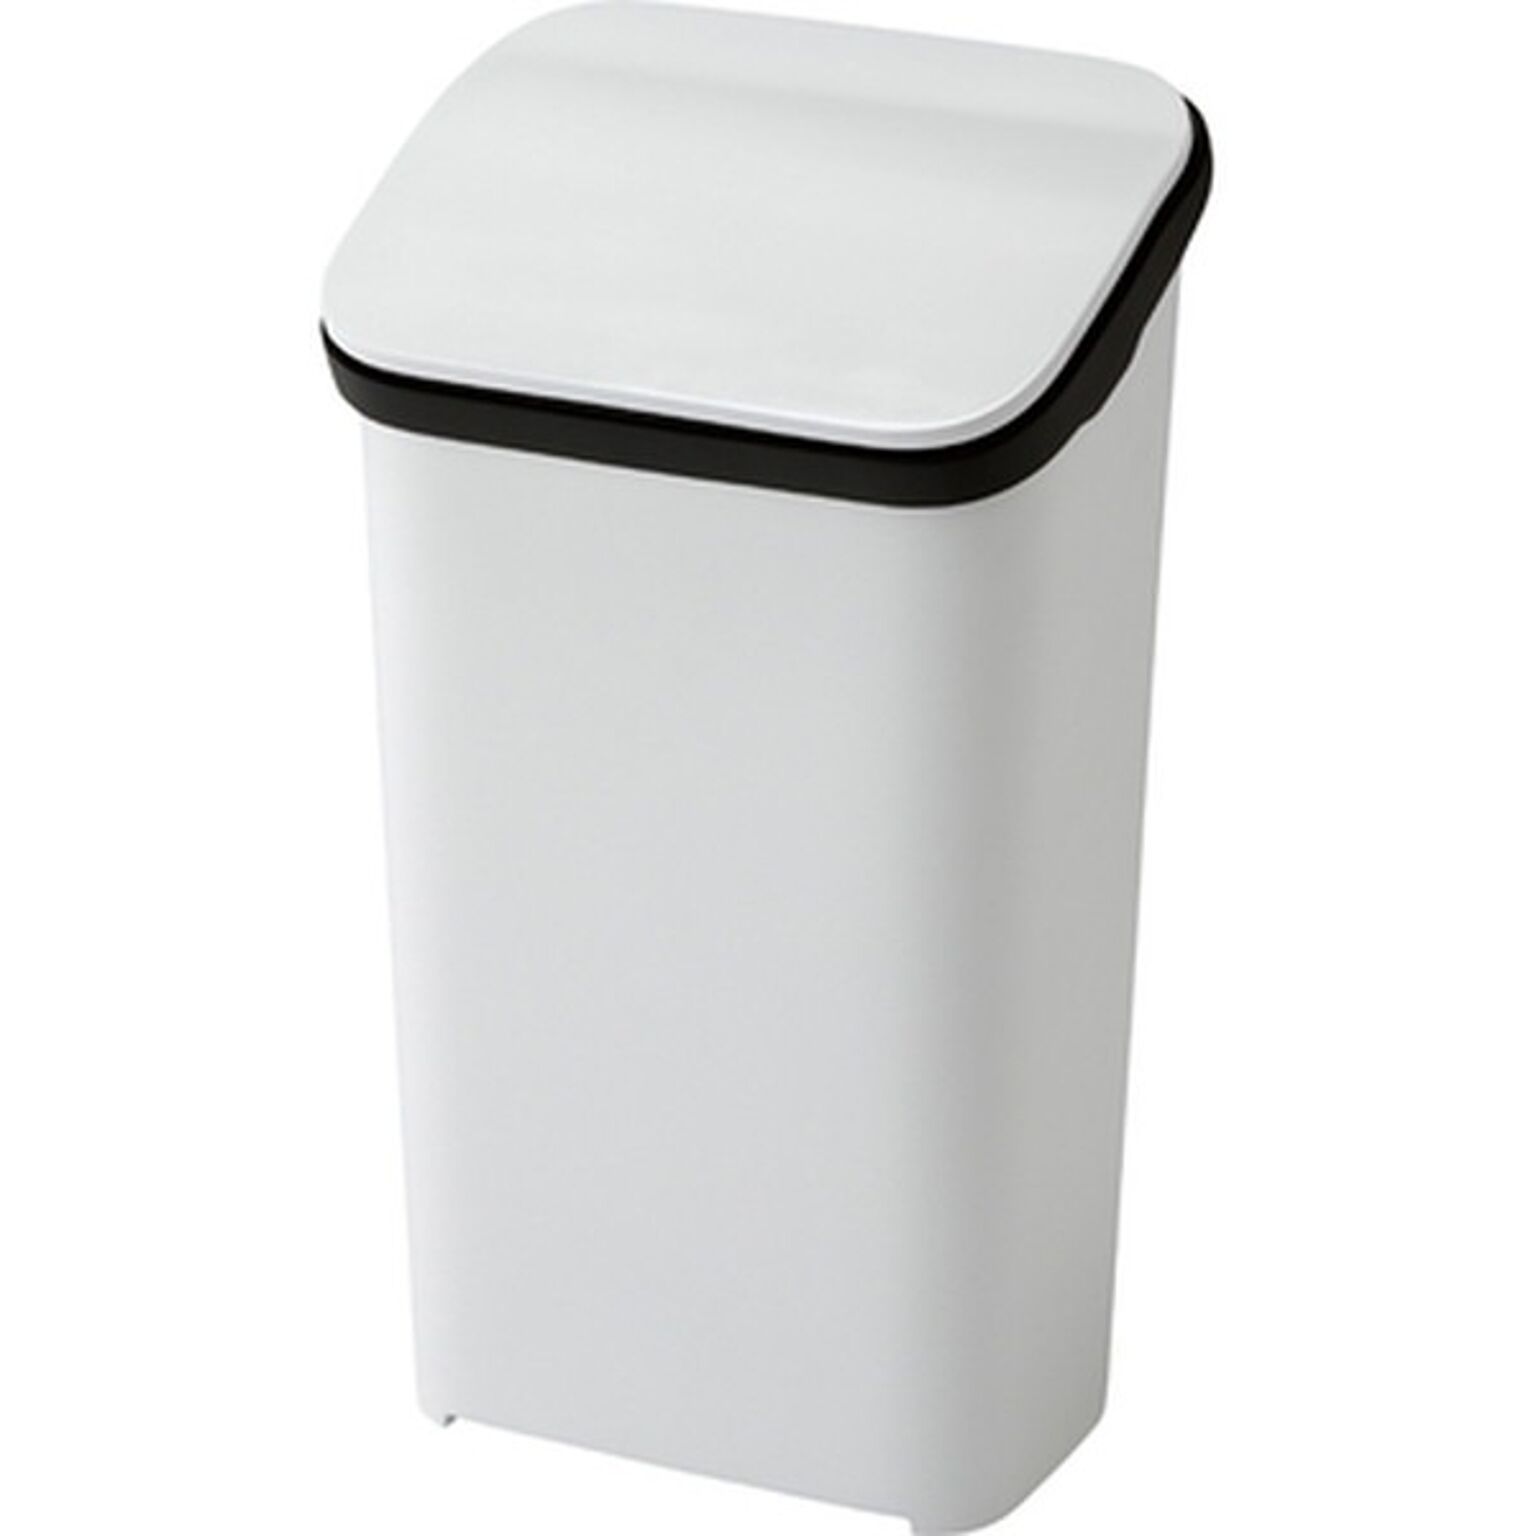 ダストボックス ゴミ箱 幅30.4cm 20L ホワイト レバー式 リクライニング 高さ4段階調節 首連動 スムース ふた付き キッチン 店舗